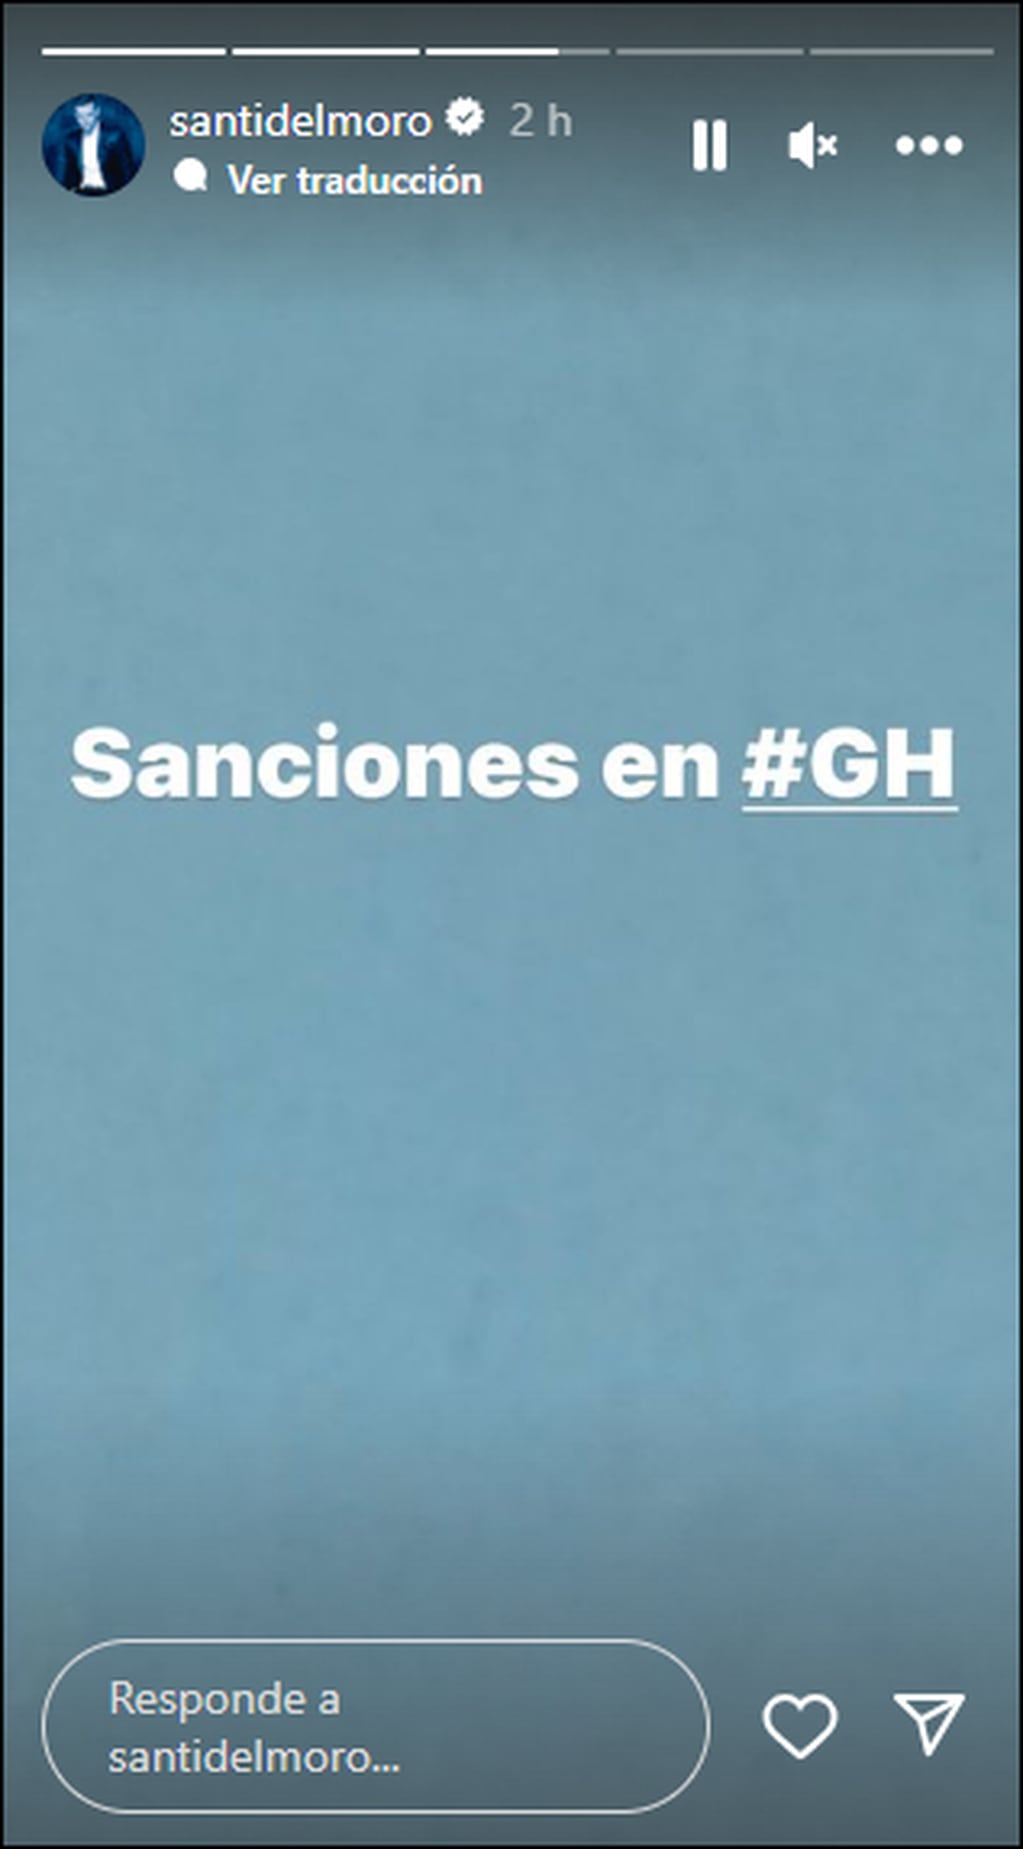 Santiago del Moro anunció que habrán sanciones en Gran Hermano esta noche.